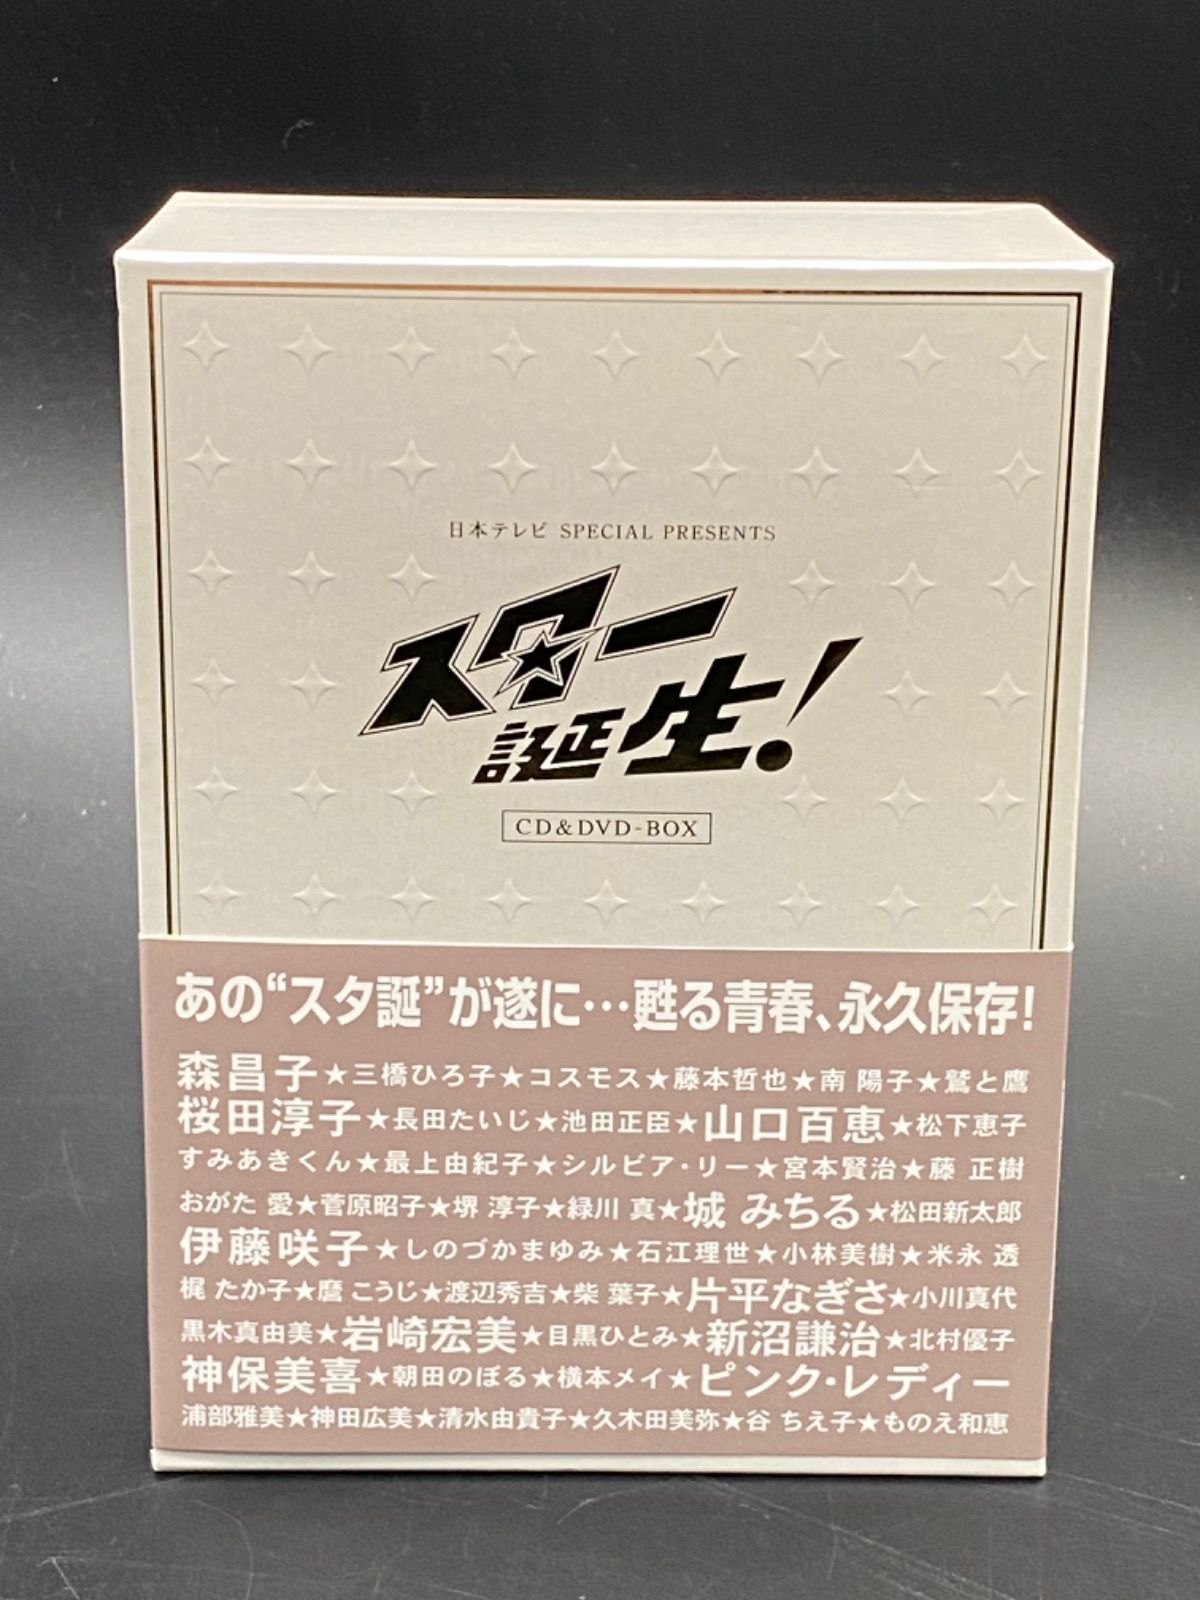 スター誕生!」CD&DVD-BOX」 - 日本映画